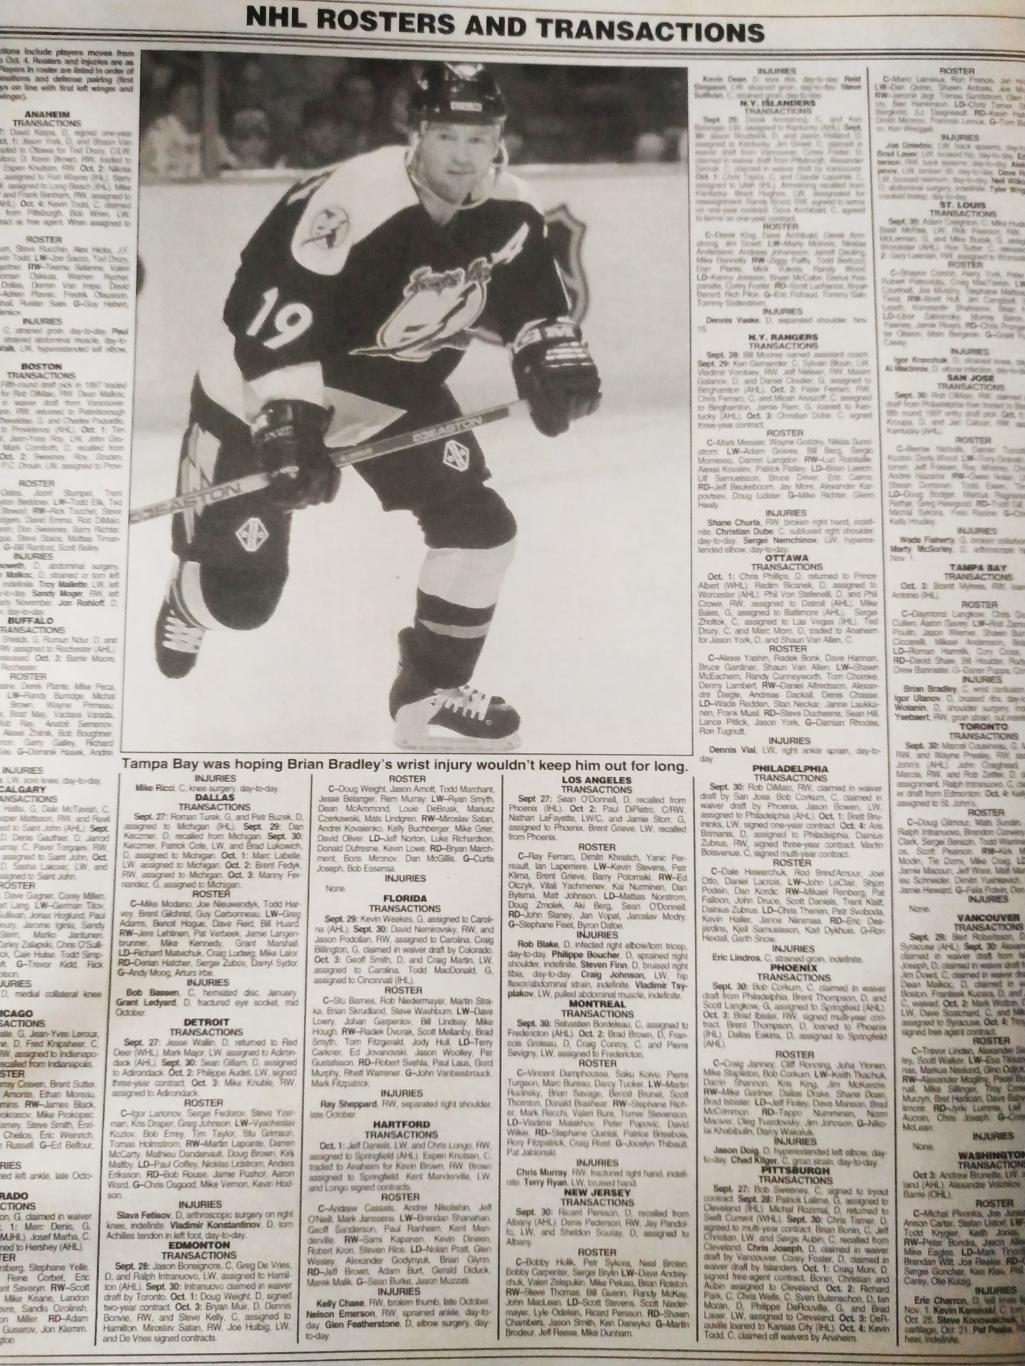 ХОККЕЙ ЖУРНАЛ ЕЖЕНЕДЕЛЬНИК НХЛ НОВОСТИ ХОККЕЯ NHL OCT.18 1996 THE HOCKEY NEWS 7